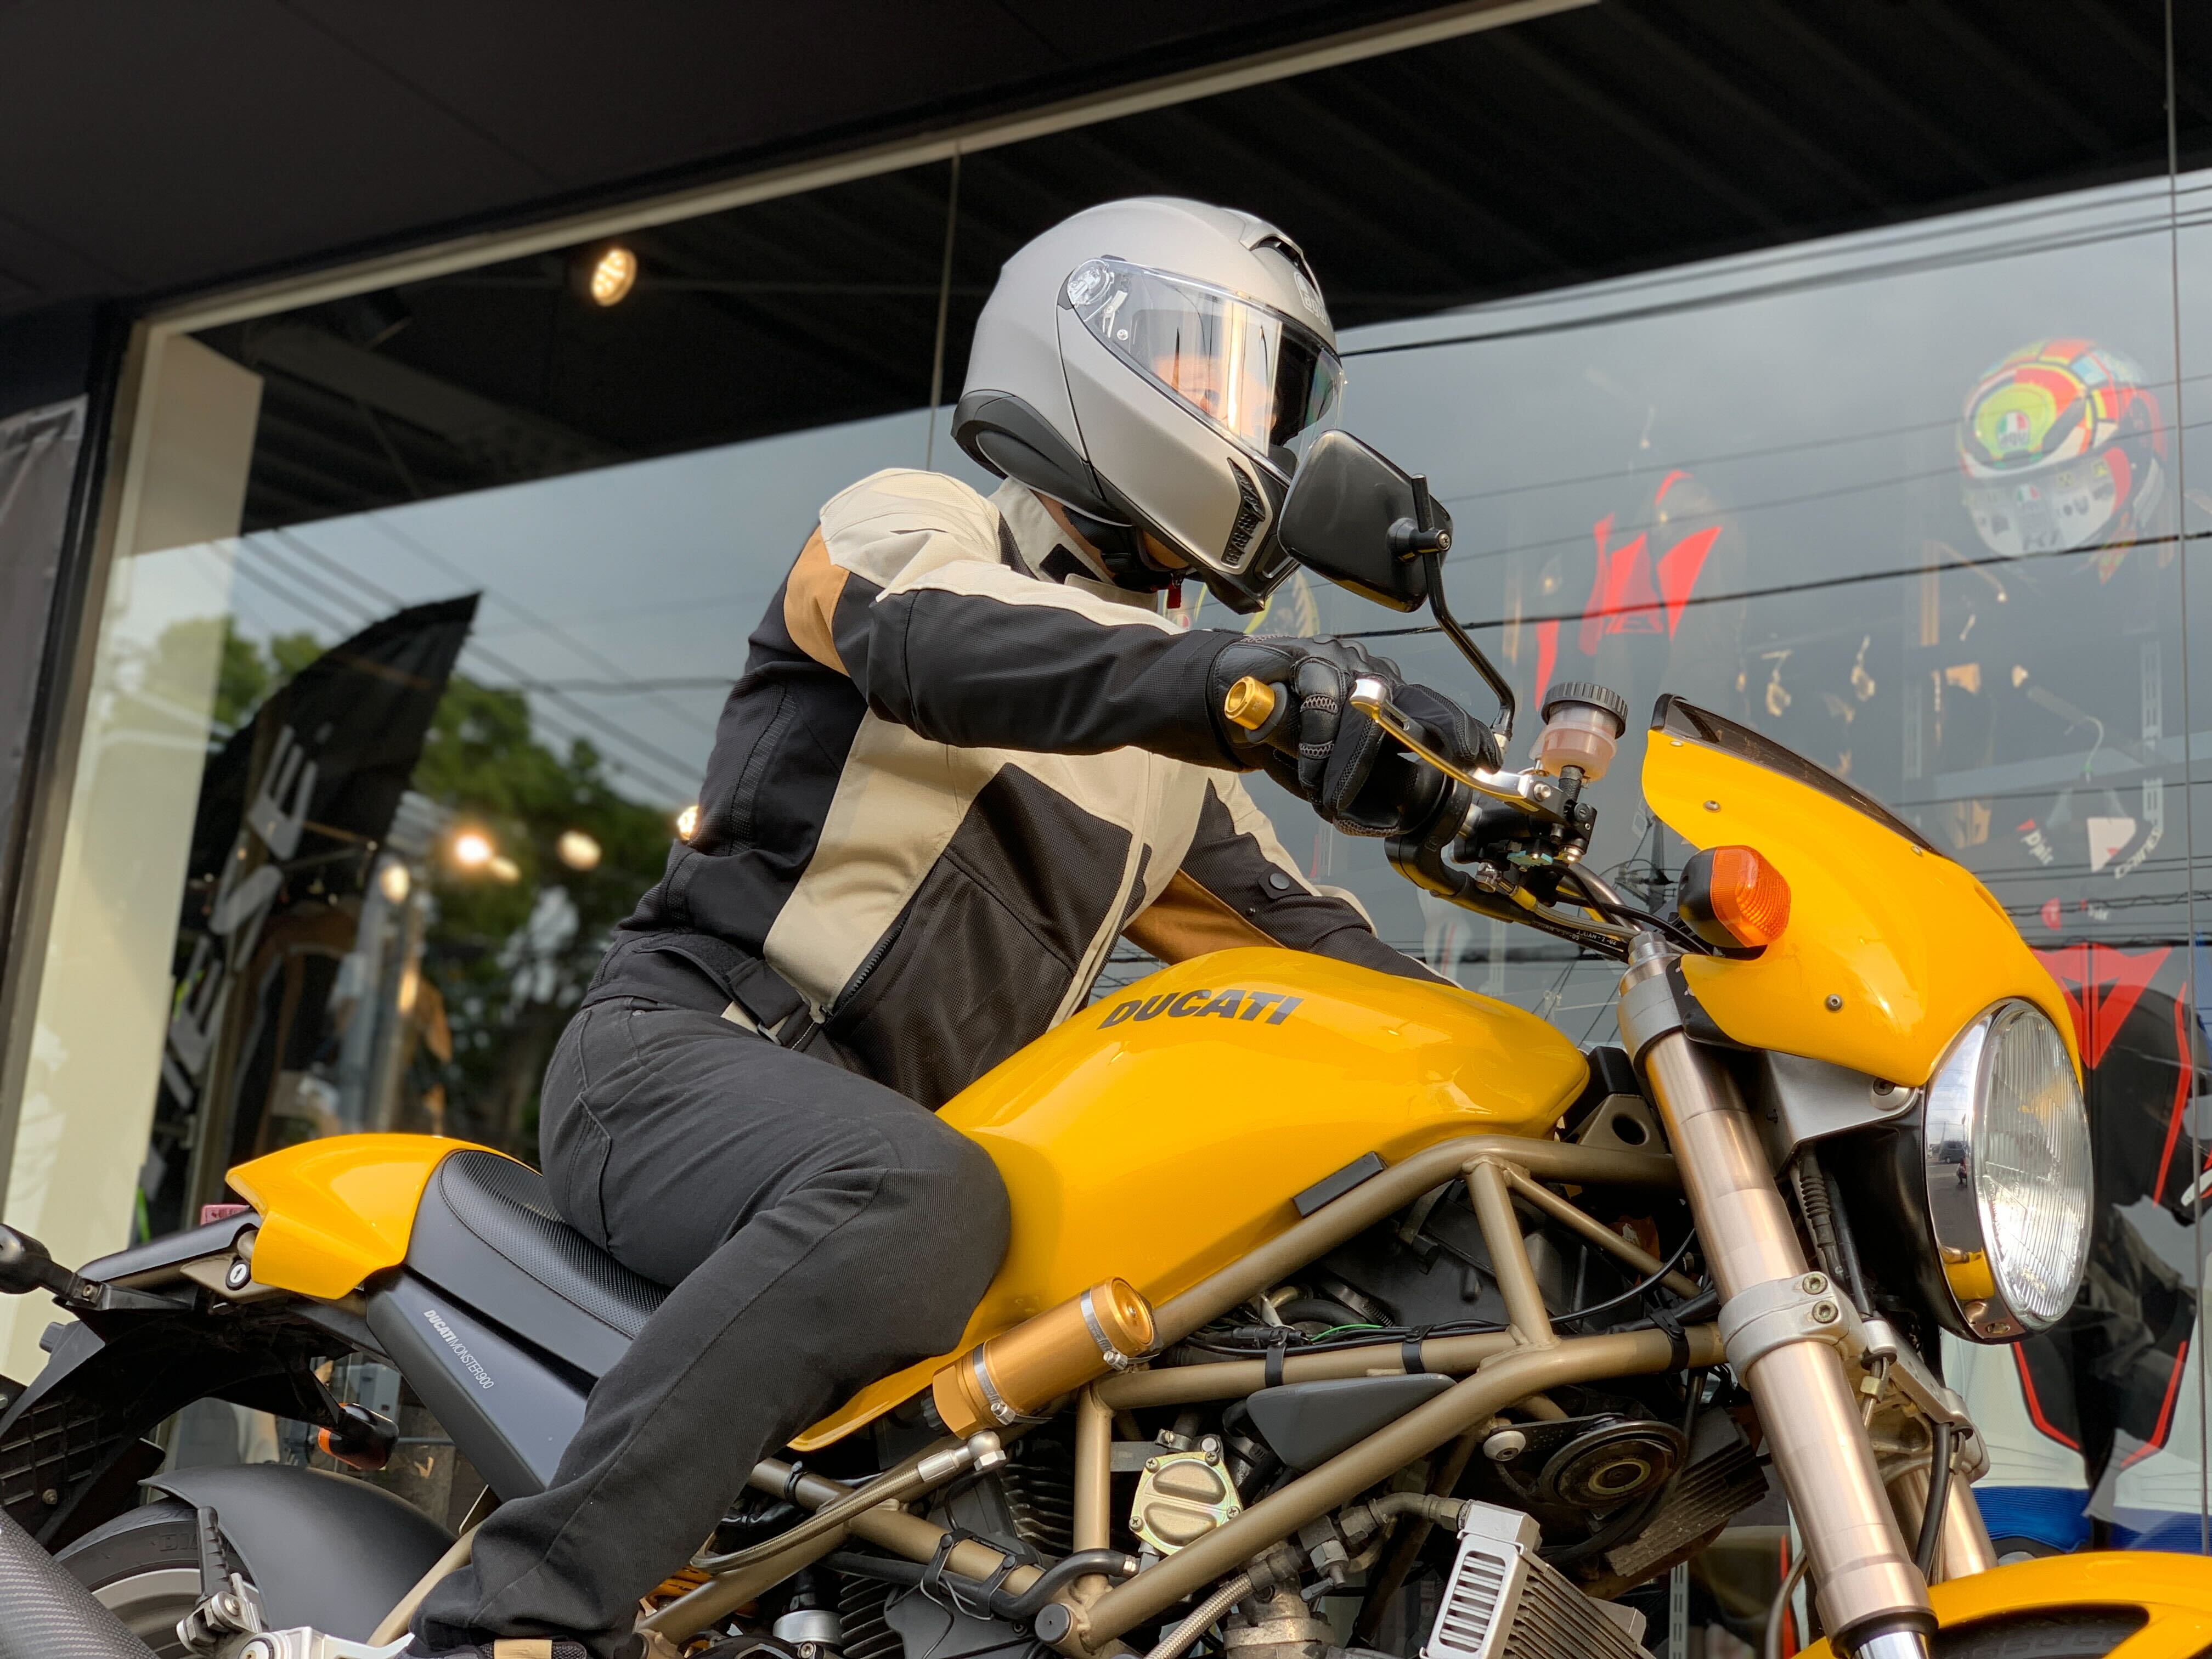 ツーリングライダーからバイク初心者の方まで幅広くオススメの新作ヘルメットをご紹介